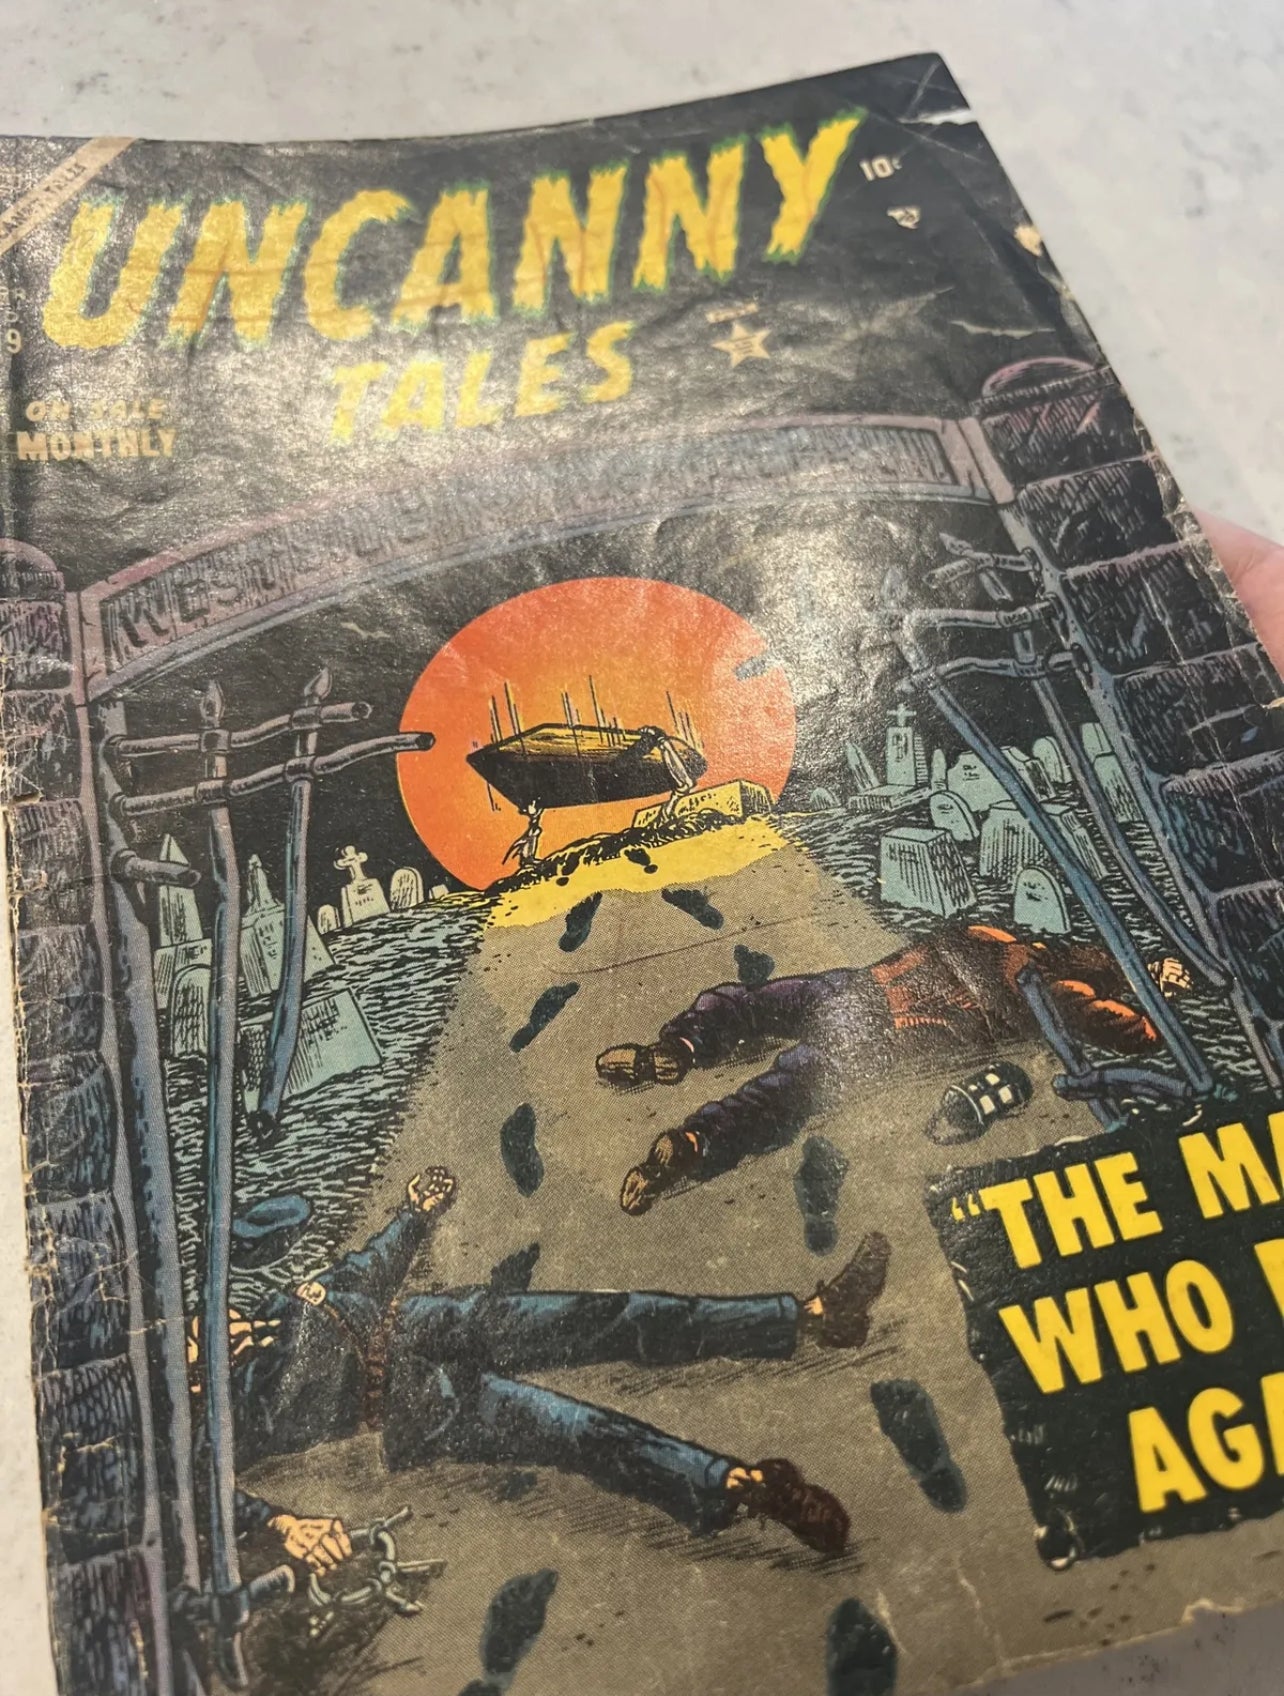 Uncanny Tales #19 (Marvel/Atlas 1954, Stan Lee Editor!) Pre Code Horror